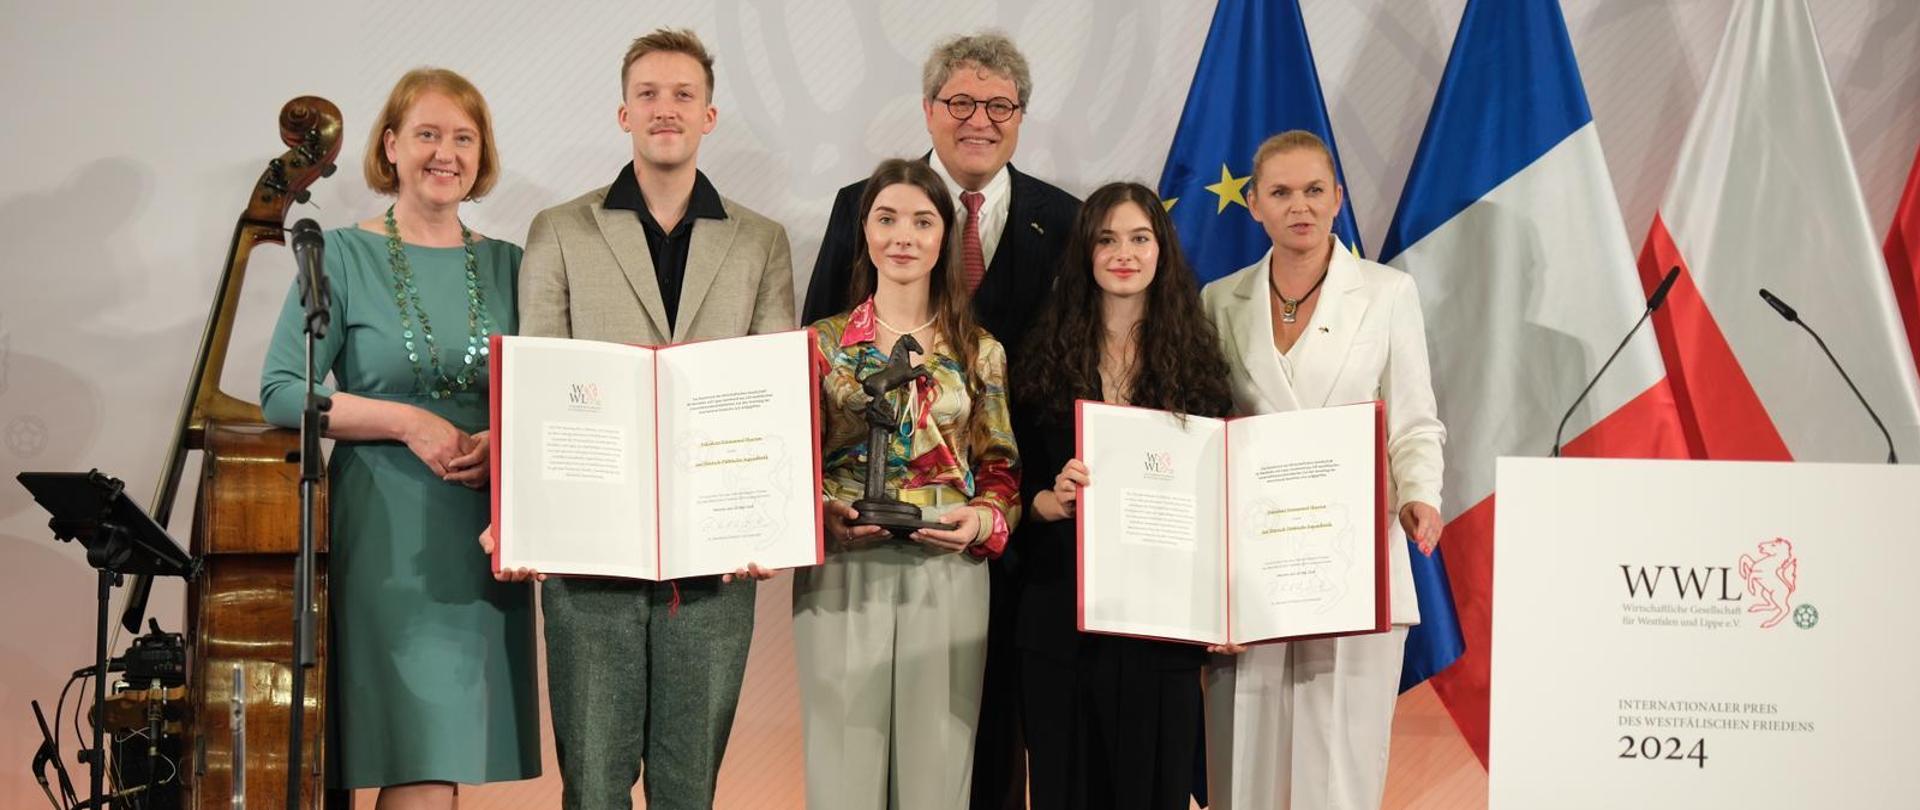 Minister Barbara Nowacka pozuje do zdjęcia z laureatami młodzieżowej Międzynarodowej Nagrody Pokoju Westfalskiego. Dwie osoby trzymają w ręku otwartą teczkę z dokumentem przyznającym nagrodę. Jedna osoba trzyma w ręku statuetkę przyznaną zwycięzcom. Za ich plecami stoją flagi Unii Europejskiej, Francji i Polski. 